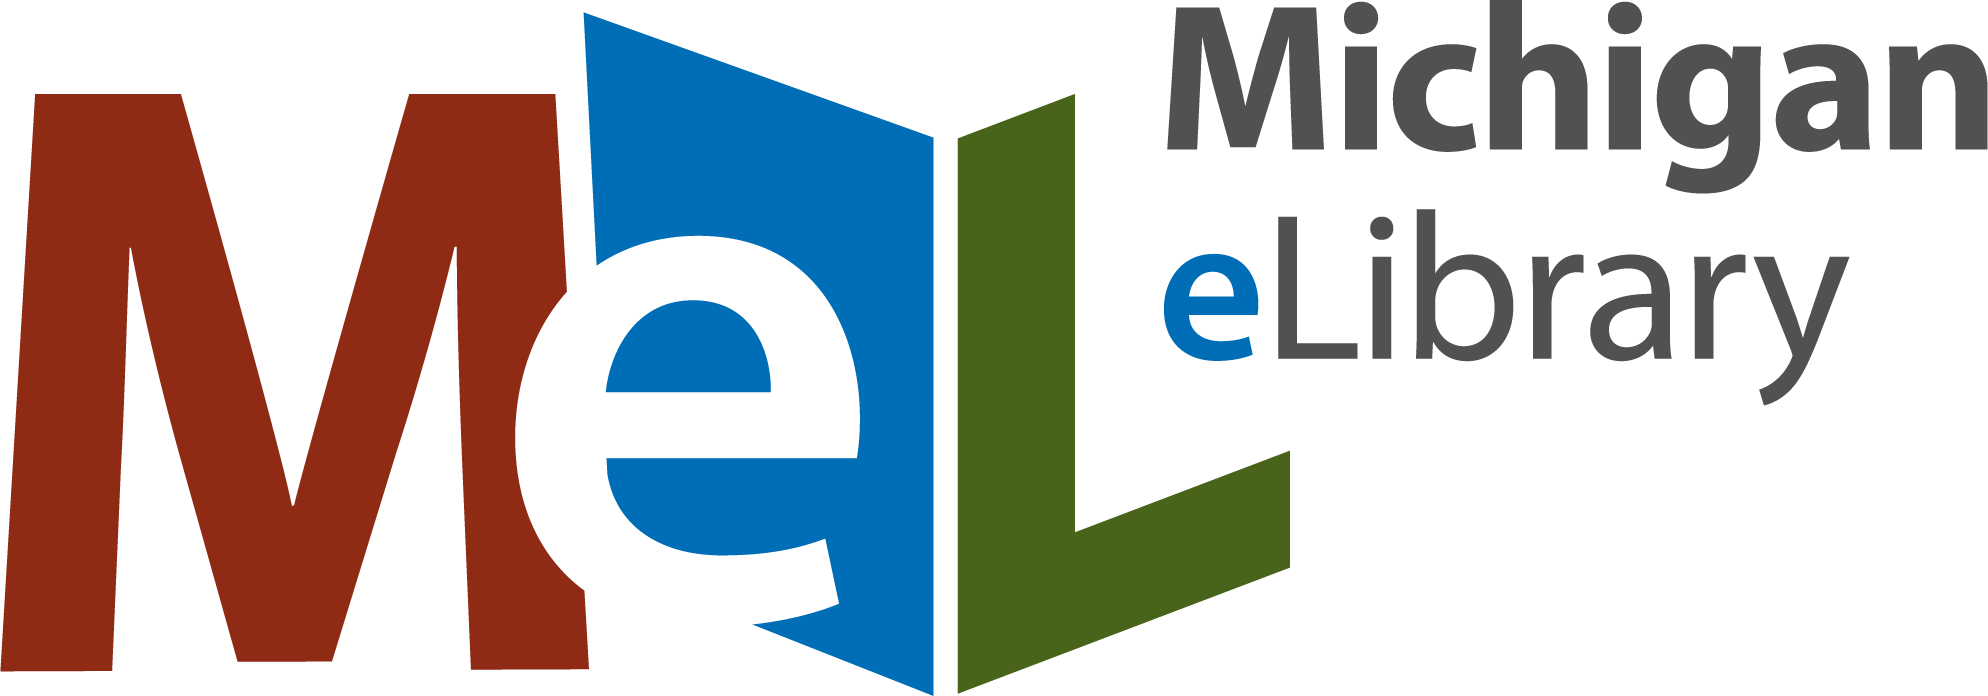 MeL-horizontal-logo-emphasis-RGB.png